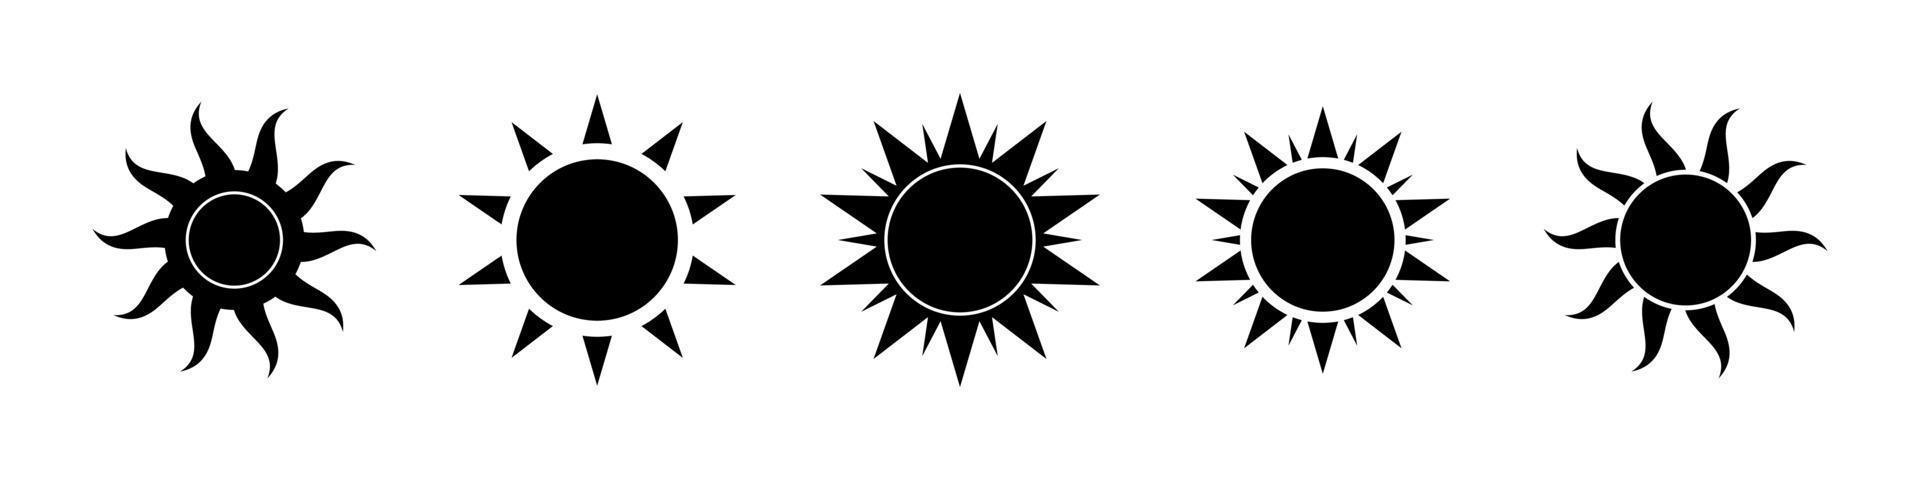 Boho himmlisch Sonne Symbol Logo Silhouette Satz. einfach modern abstrakt Design zum Vorlagen, Drucke, Netz, Sozial Medien Beiträge vektor